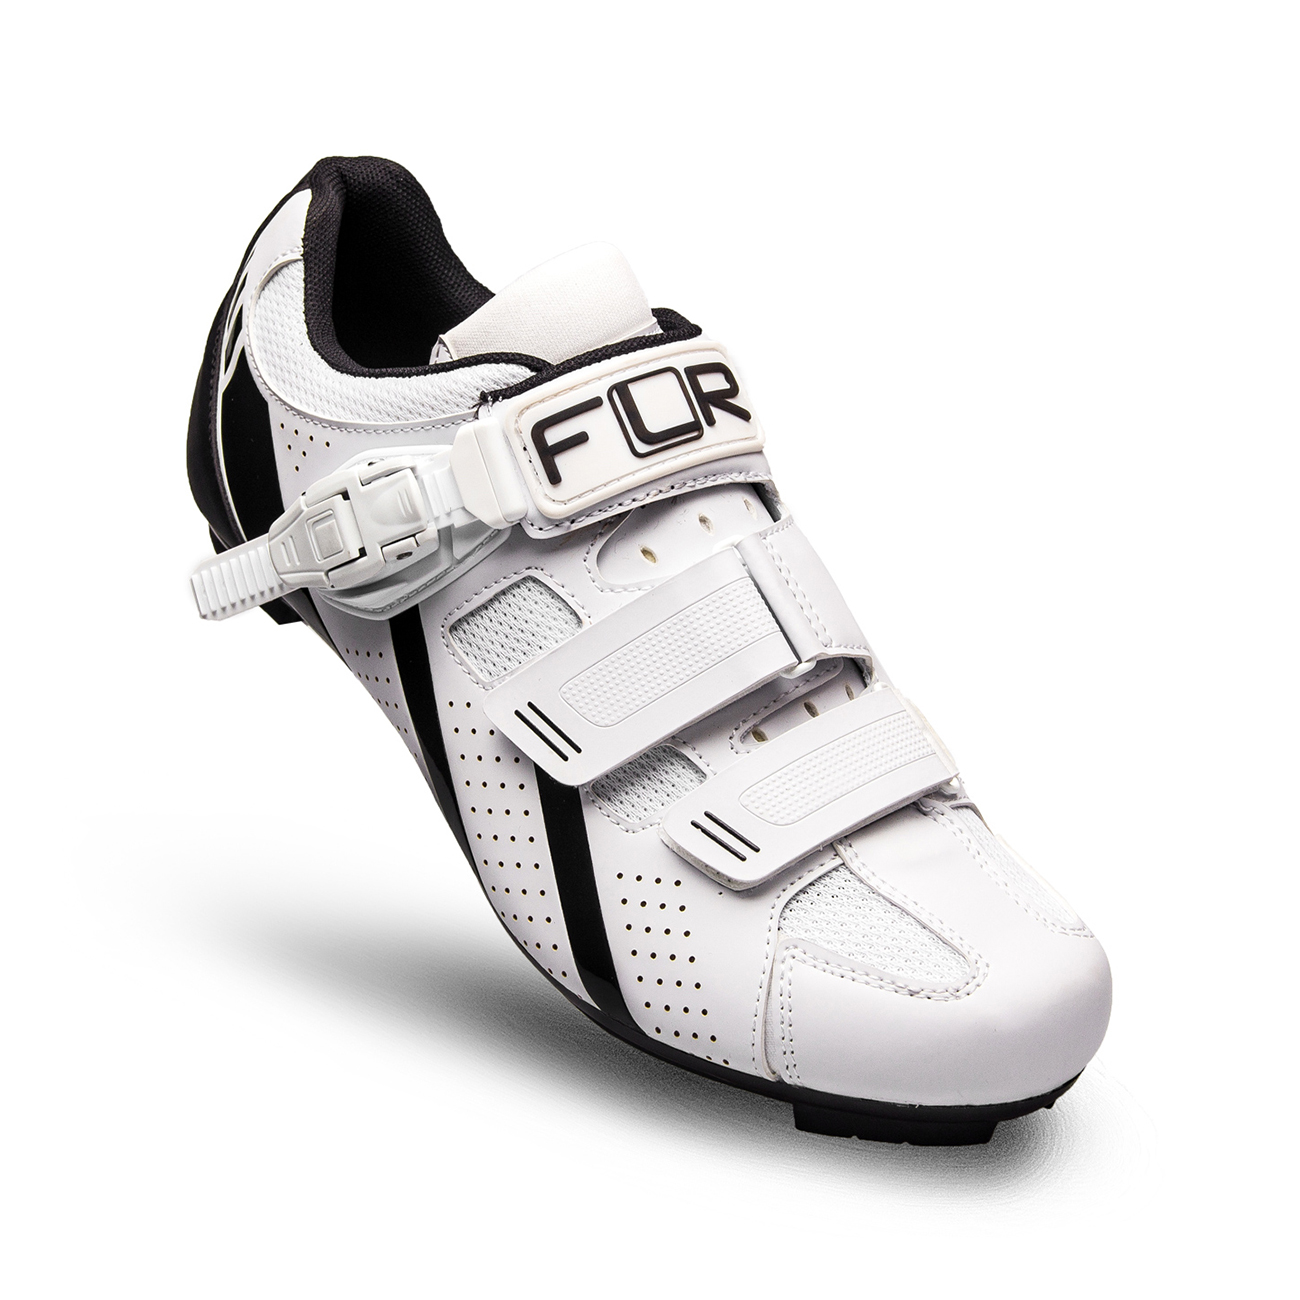 
                FLR Cyklistické tretry - F15 - černá/bílá 43
            